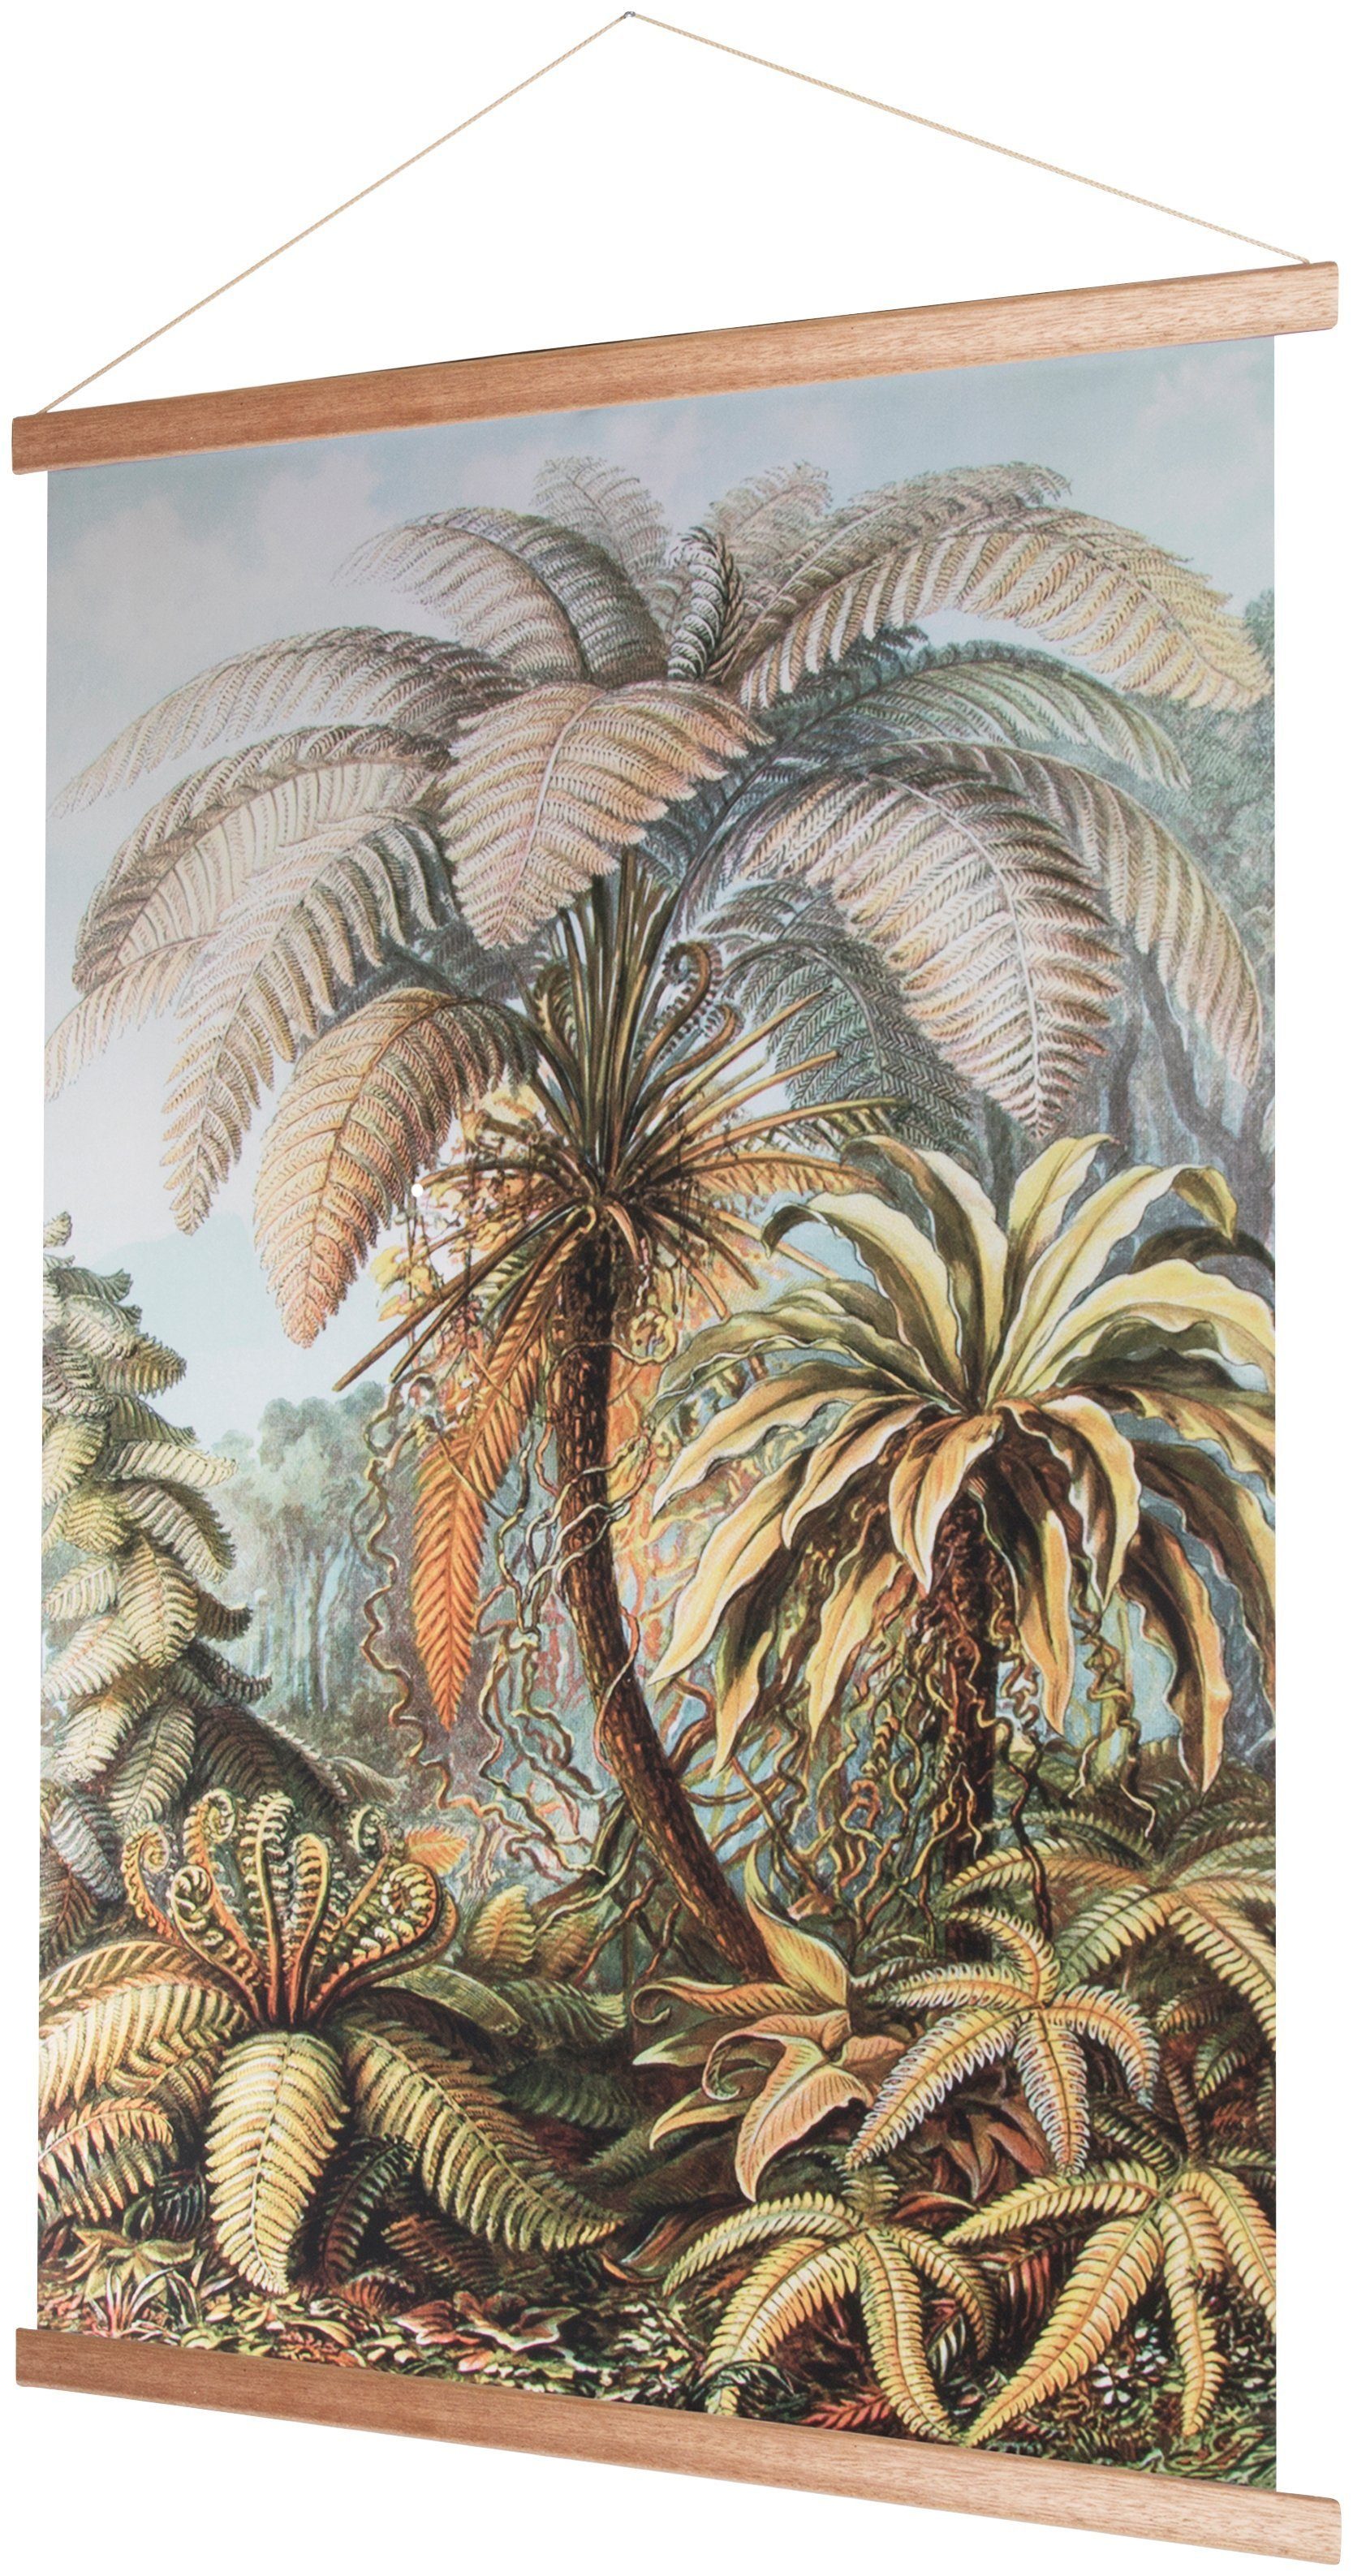 Dschungel, Art Pflanzen, for home Poster 100x70cm, Wandposter the Wandbild, Bild, Poster,